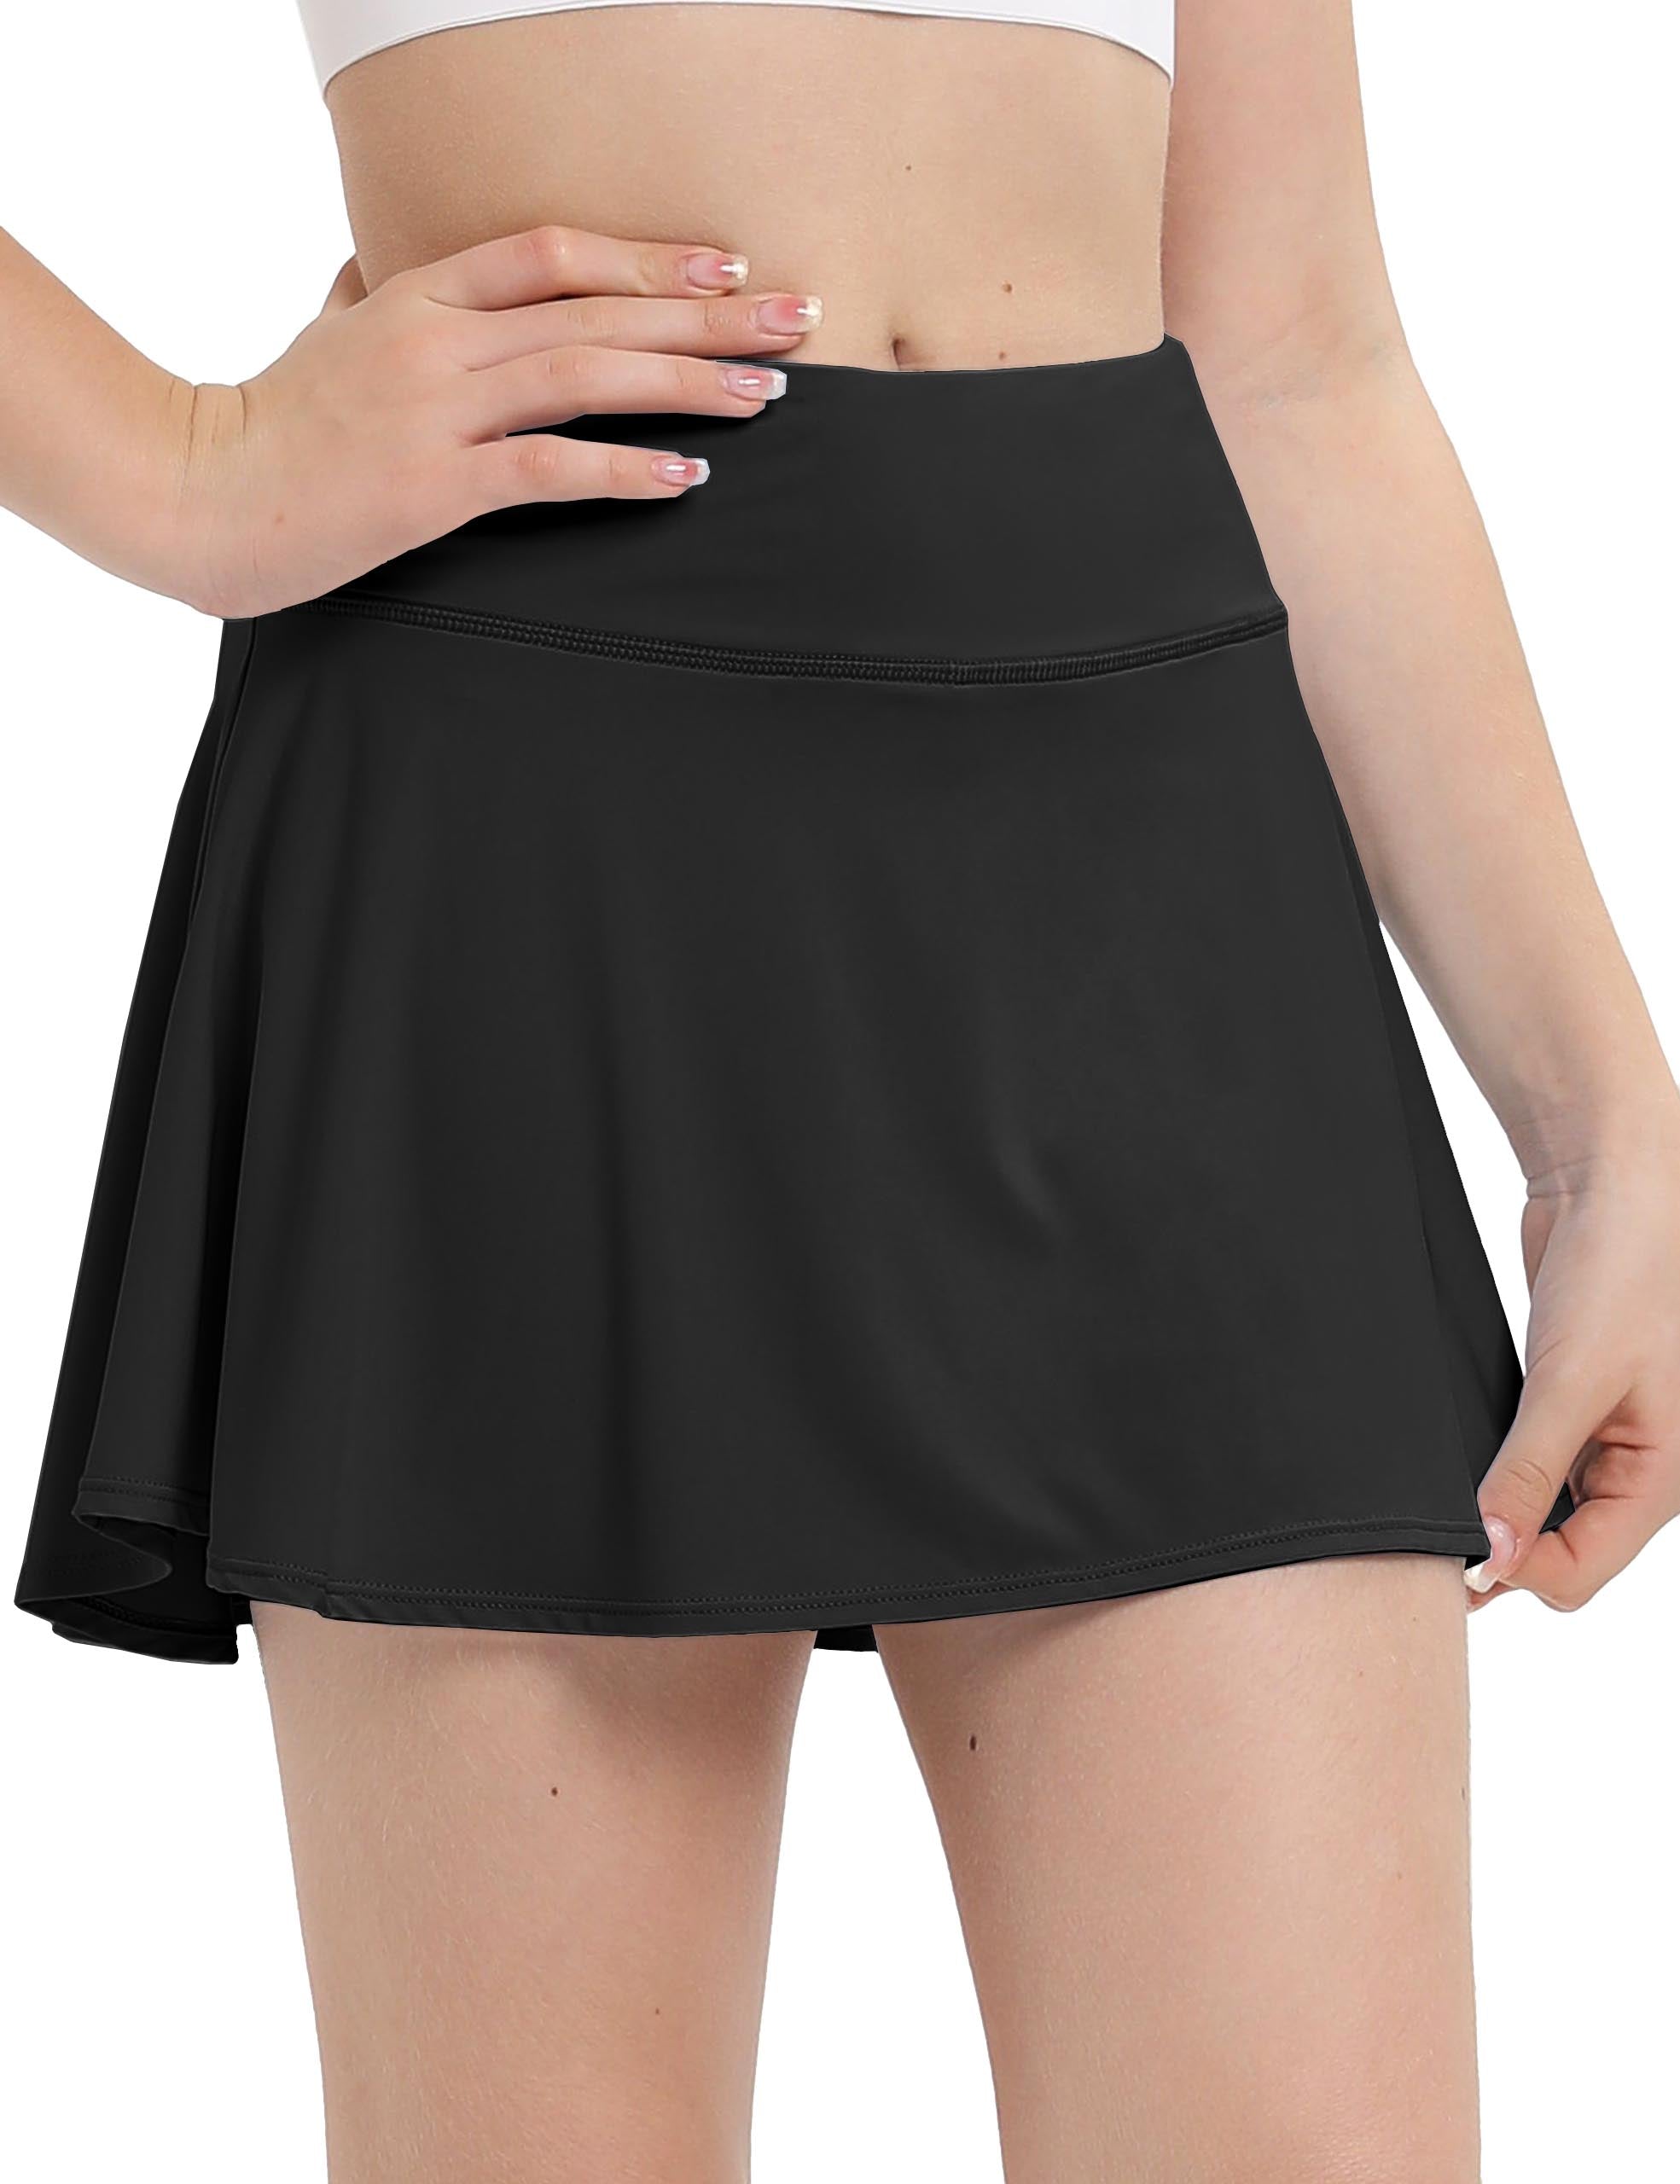 Girls Sports Skirt Mesh Lined